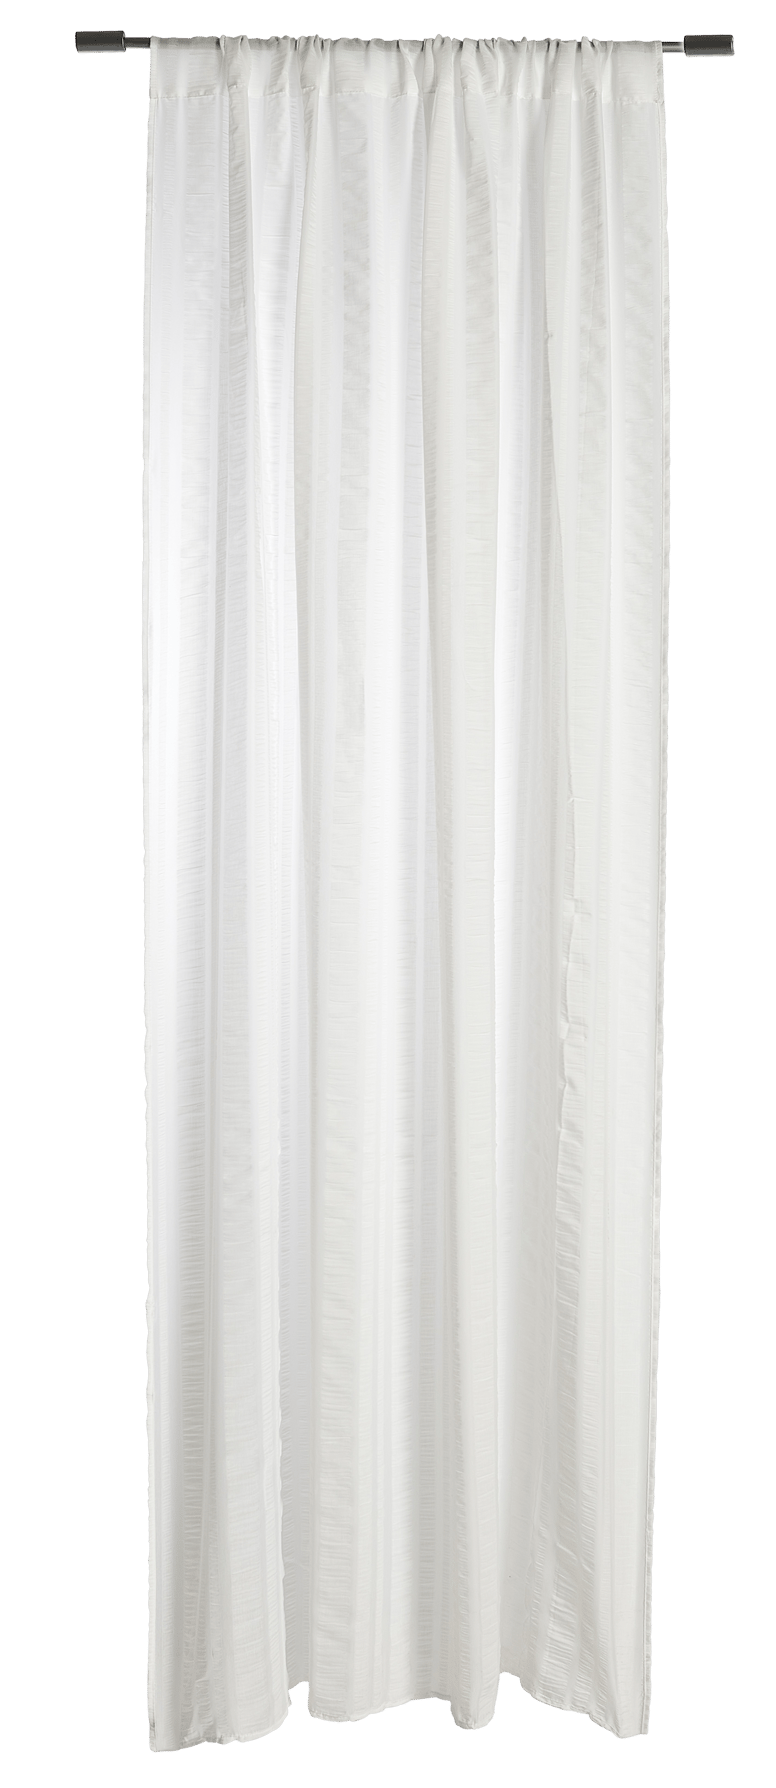 CELINE Gordijn wit B 140 x L 240 cm